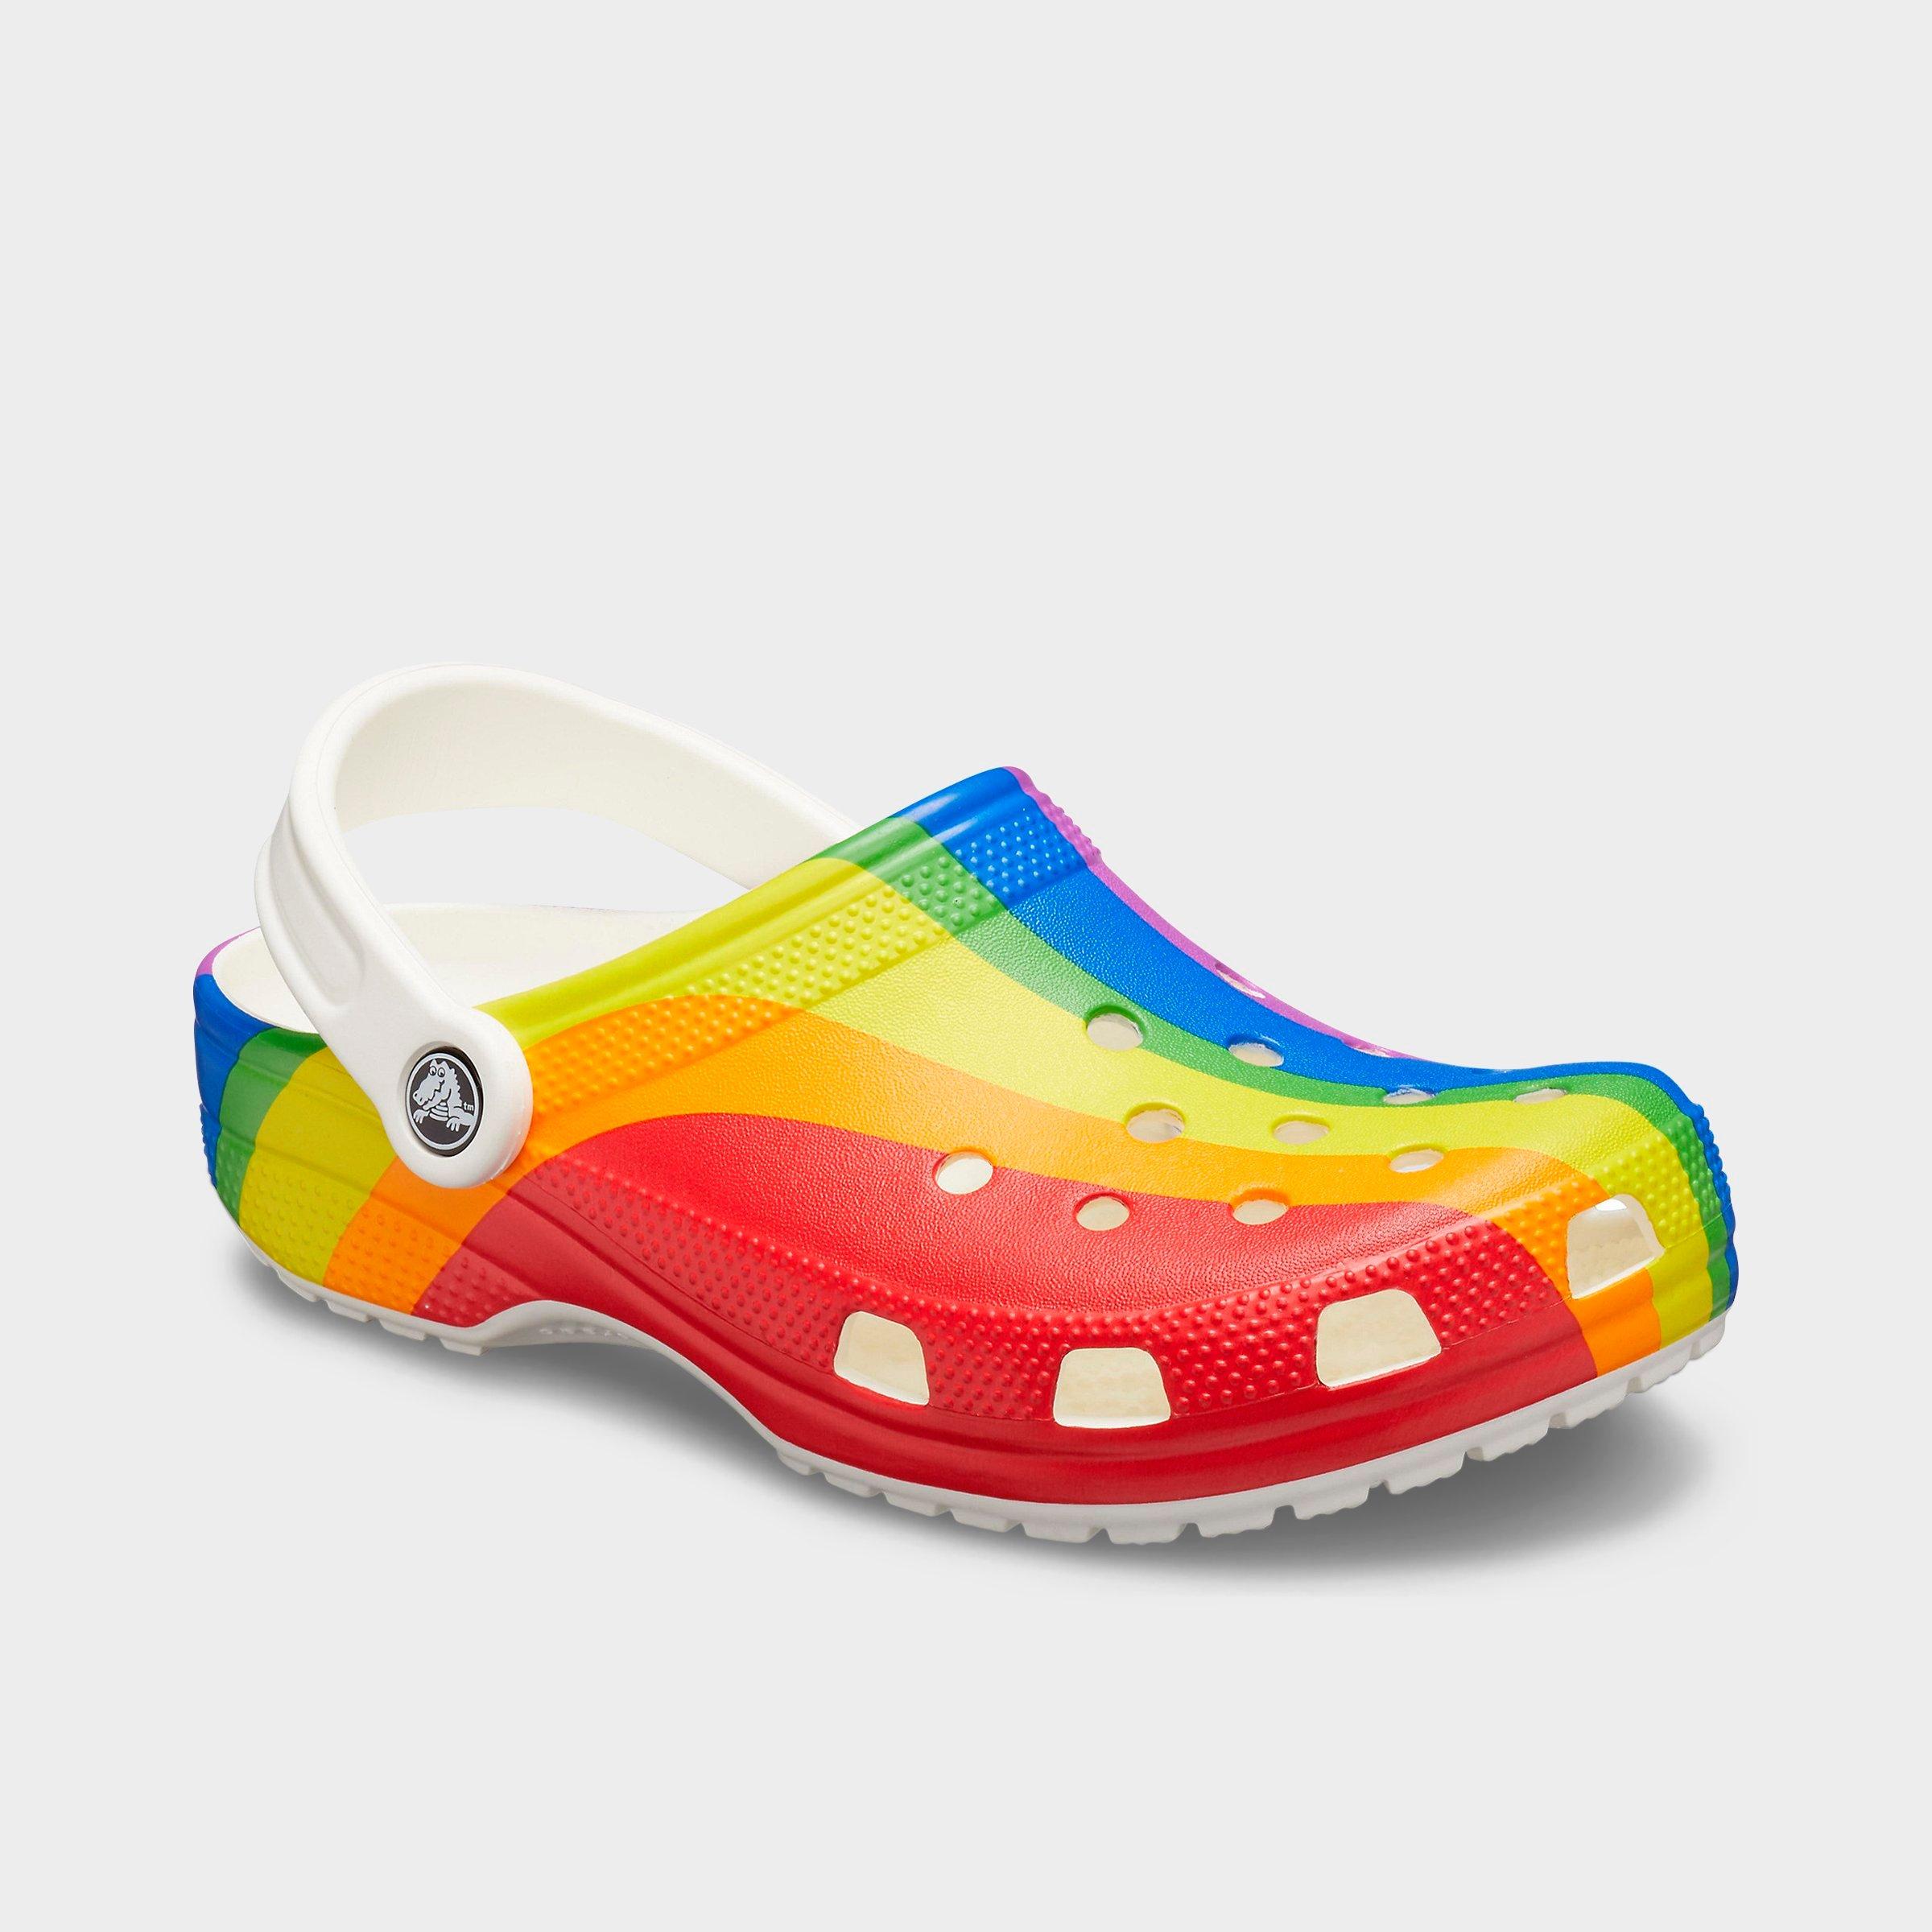 crocs with rainbow